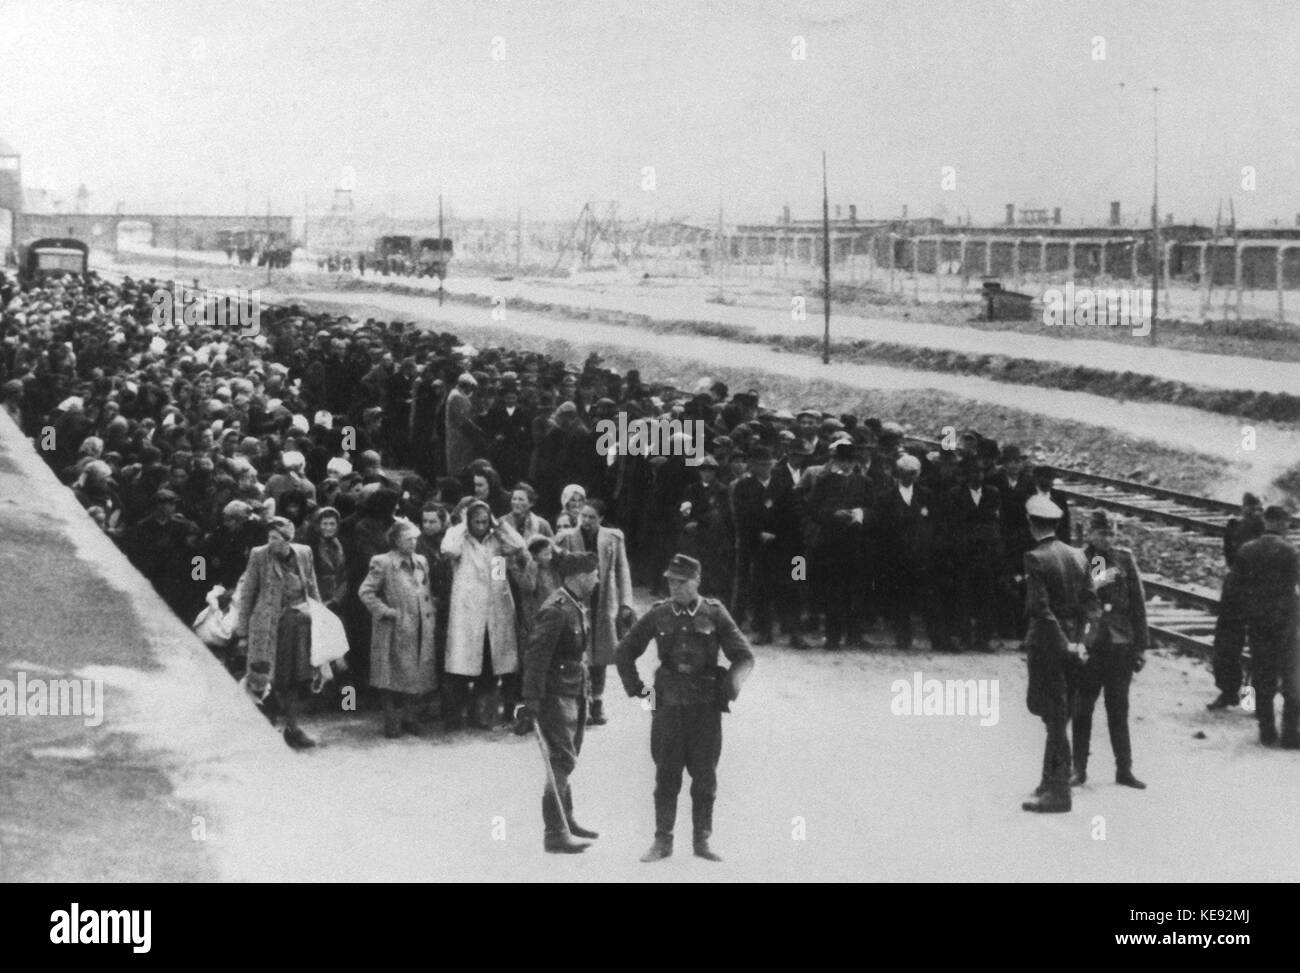 Ein undatiertes Bild des Konzentrationslager Auschwitz zeigt die Auswahlverfahren. Links Frauen und Kinder, rechte Seite Männer. Bis zu 4 Millionen Menschen in Auschwitz von den Nazis ermordet wurden. | Verwendung weltweit Stockfoto